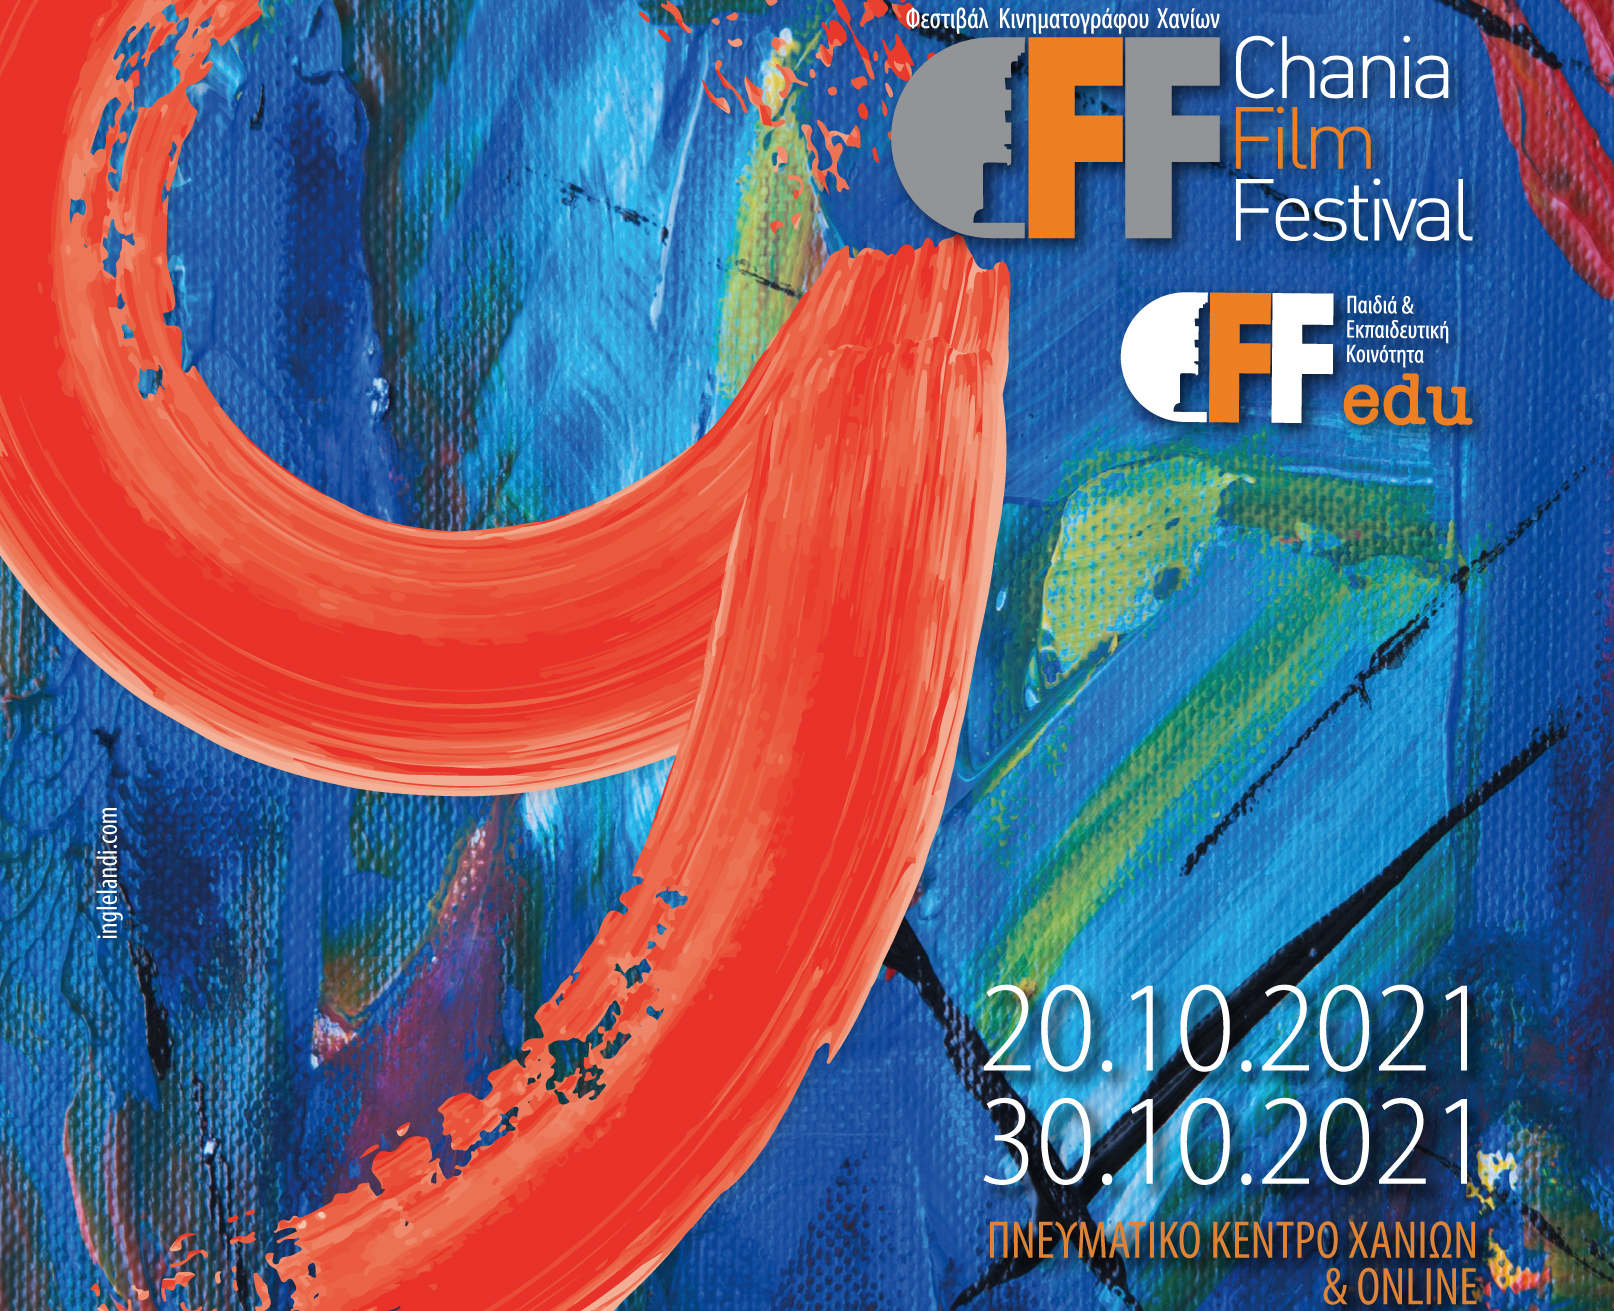 Ανακοινώθηκε το πρόγραμμα του 9ου Φεστιβάλ Κινηματογράφου Χανίων/Chania Film Festival